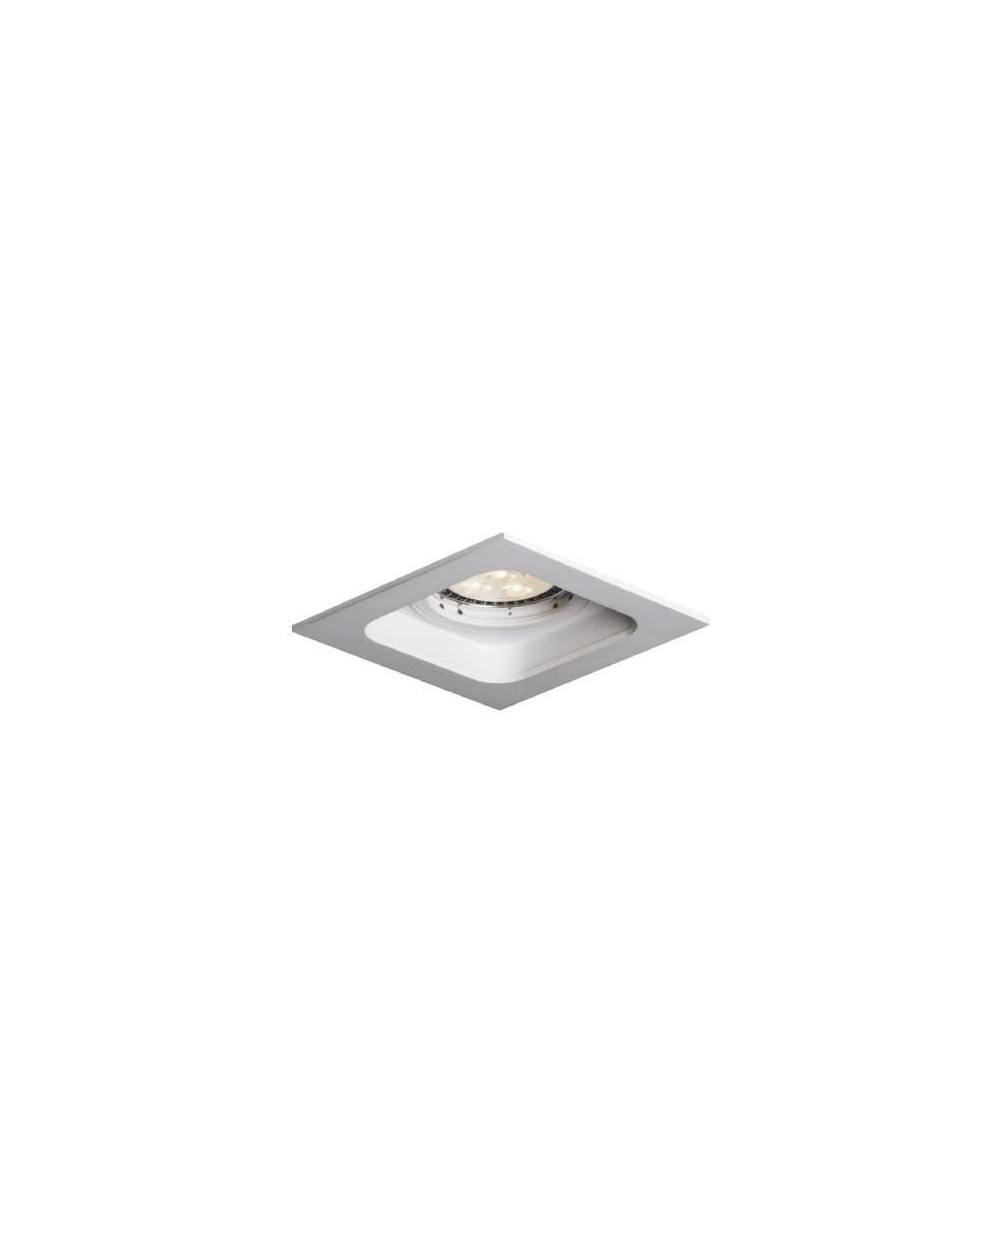 Lampa sufitowa Quad QR111 WP - Mistic Lighting oprawa wpuszczana kwadratowa typu downlight do zabudowy w sufitach biały mat 